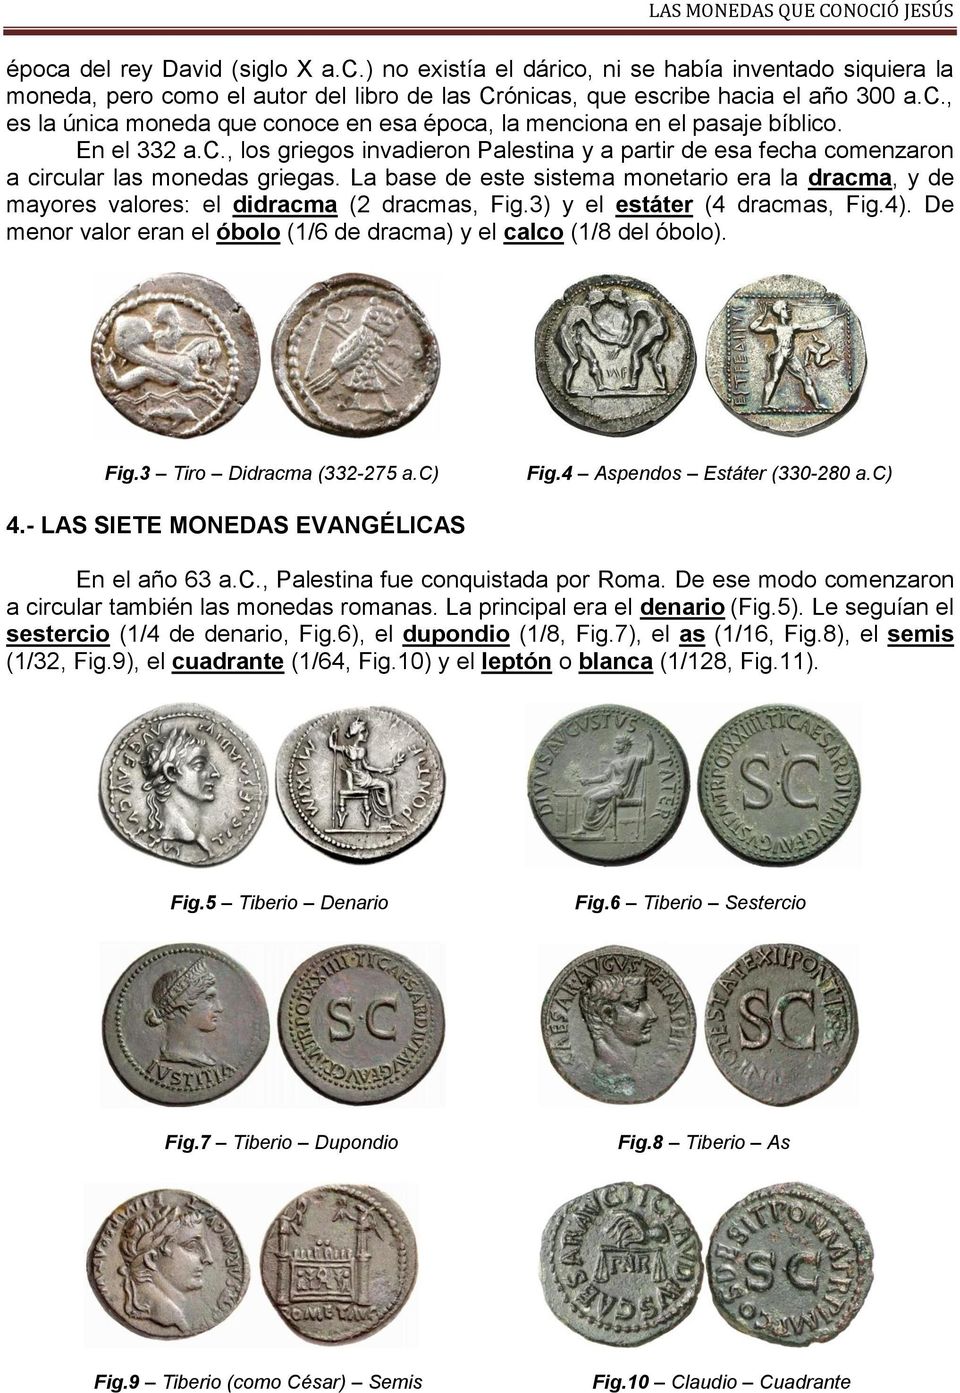 La base de este sistema monetario era la dracma, y de mayores valores: el didracma (2 dracmas, Fig.3) y el estáter (4 dracmas, Fig.4).